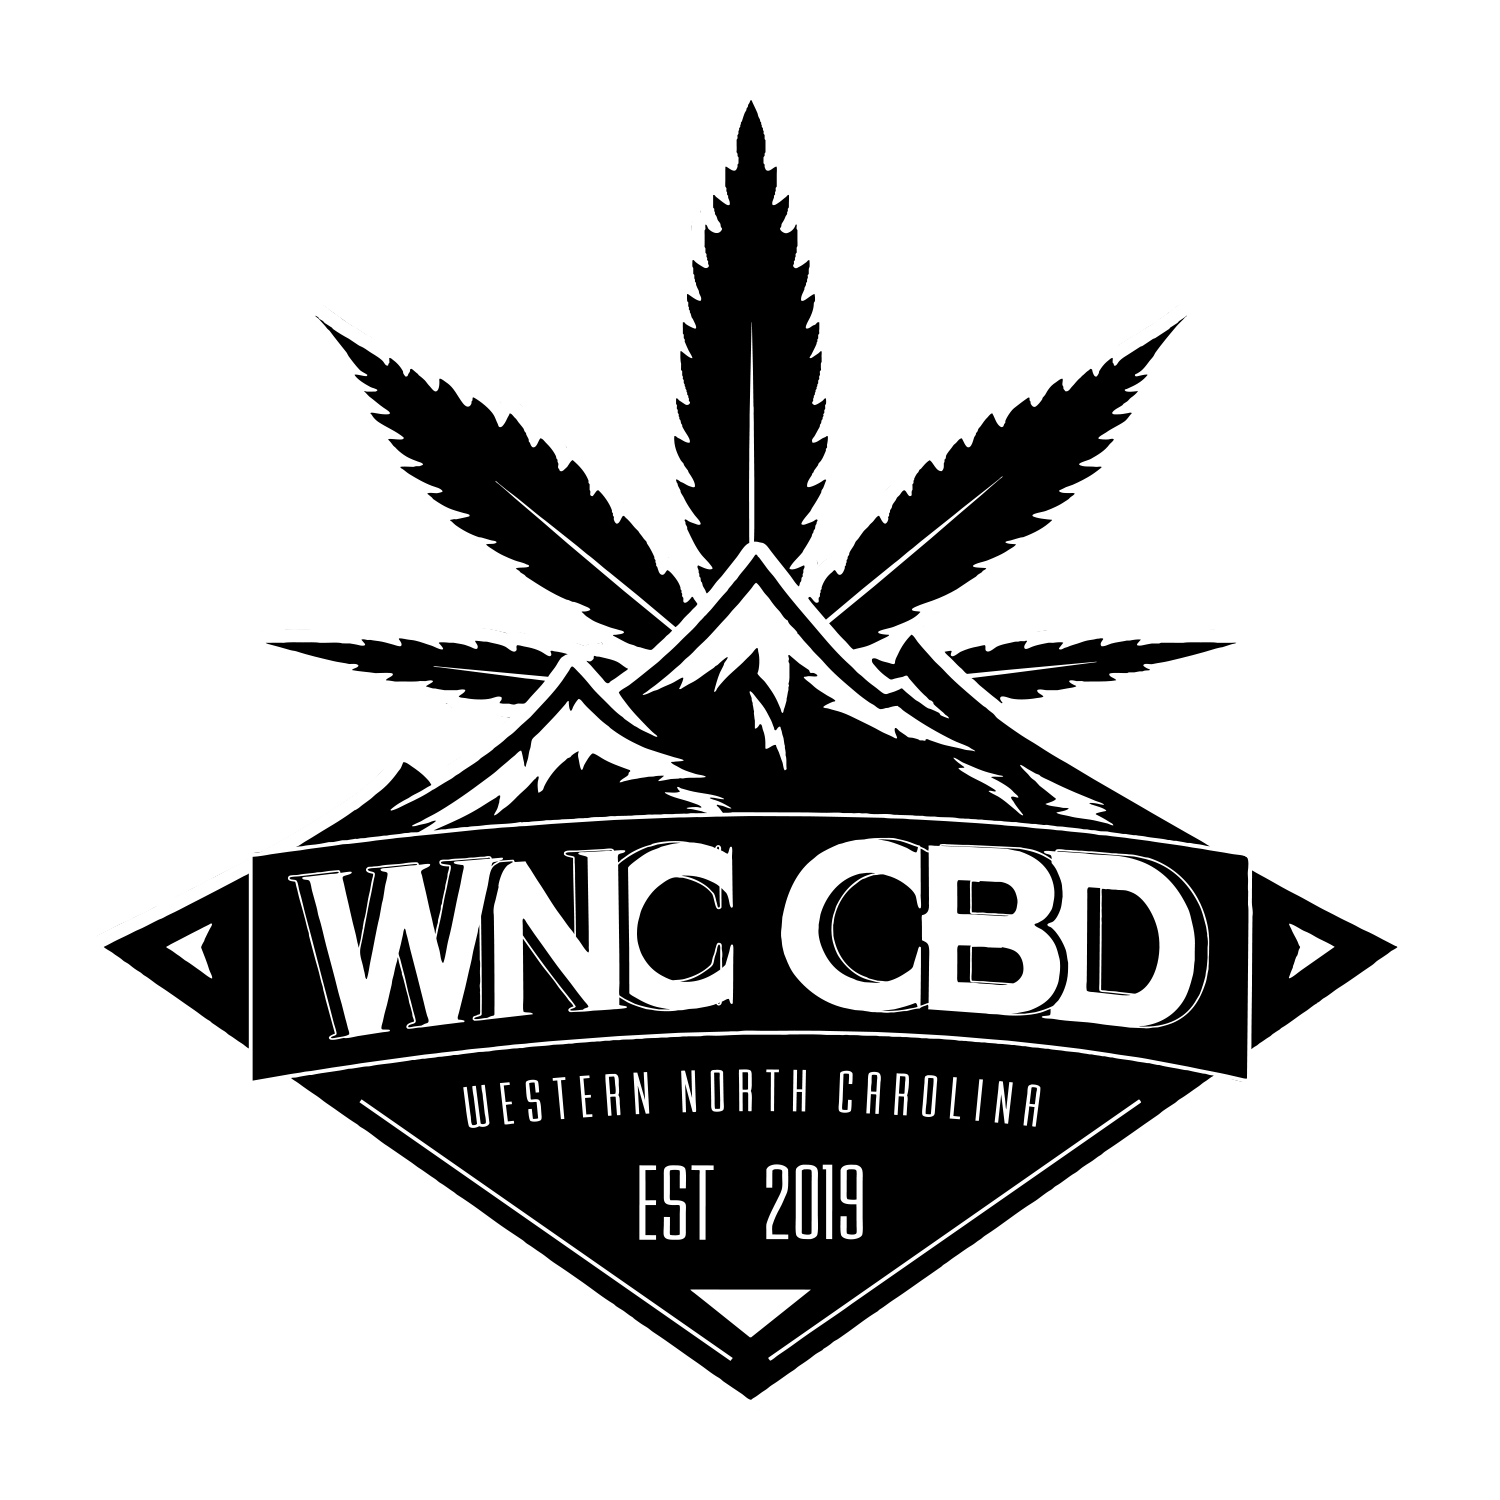 WNC-CBD